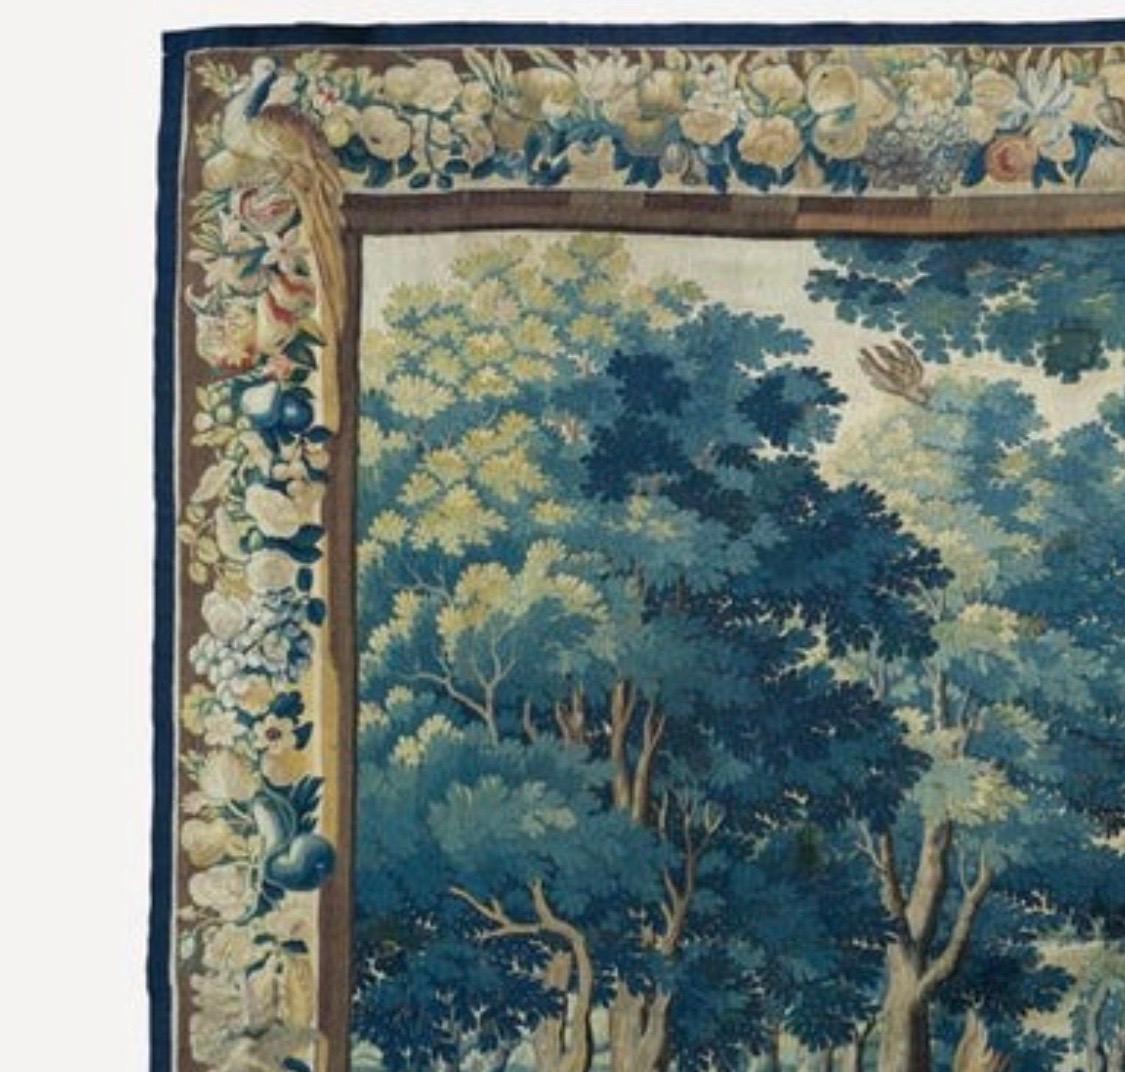 Il s'agit d'une magnifique tapisserie flamande ancienne du 17ème siècle représentant une belle et riche scène estivale d'une campagne avec des arbres et une végétation luxuriante, avec deux personnages au premier plan. La bordure présente plusieurs